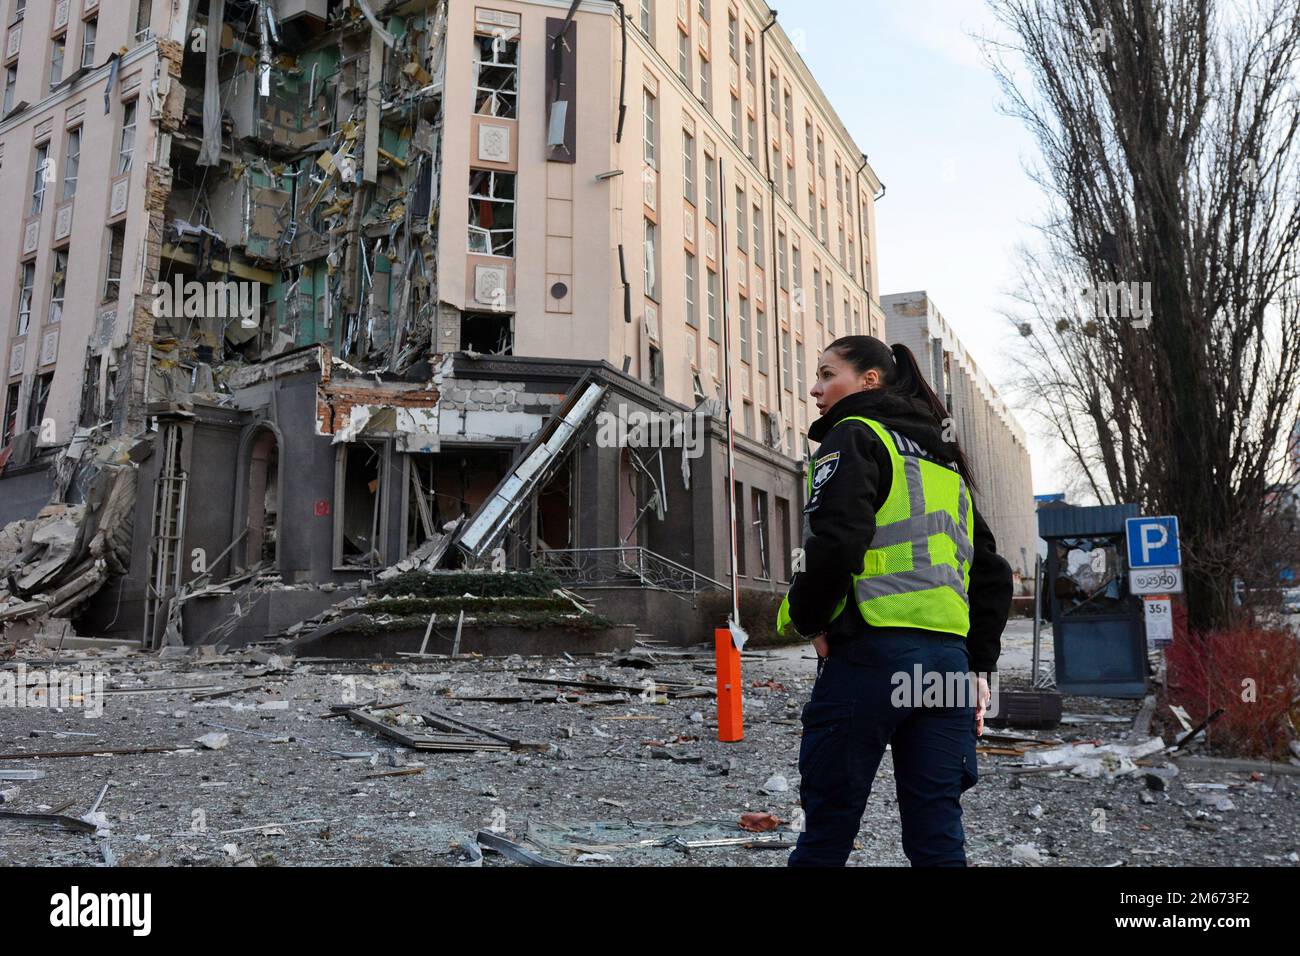 Ein Polizist am Boden eines Hotels, das teilweise durch einen russischen Streik im Zentrum der ukrainischen Hauptstadt Kiew zerstört wurde. Russische Streiks zielten auf mehrere Regionen der Ukraine ab, darunter die Hauptstadt Kiew, in der die Angriffe mindestens eine Person töteten und mehrere andere verwundeten, so die ukrainischen Beamten. Stockfoto